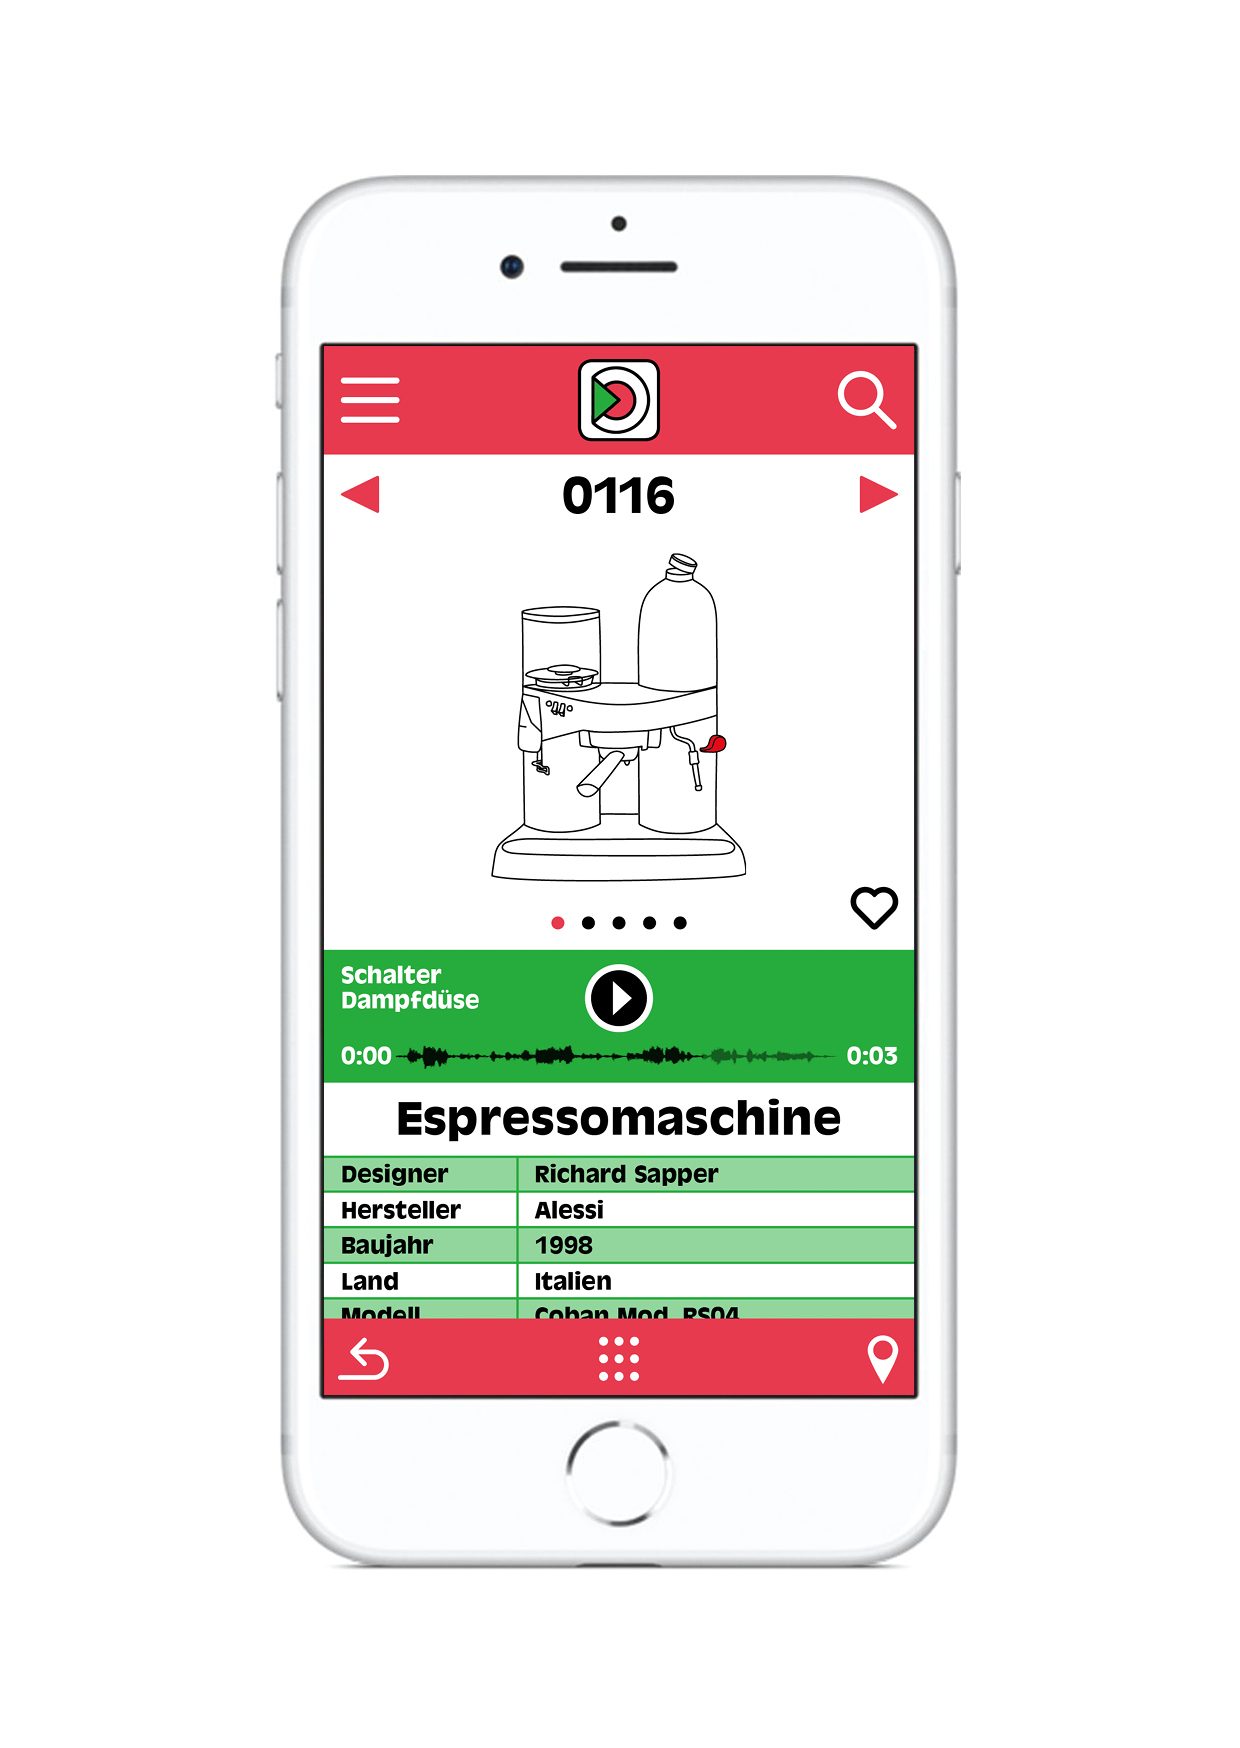 Fotografie von einem Smartphone auf weißem Hintergrund. Auf dem Bildschirm wird die App in Grün und Rot angezeigt. Zu sehen ist das Logo, die Zeichnung einer Espressomaschine, eine Tonspur und eine Tabelle mit Angaben zum Objekt.